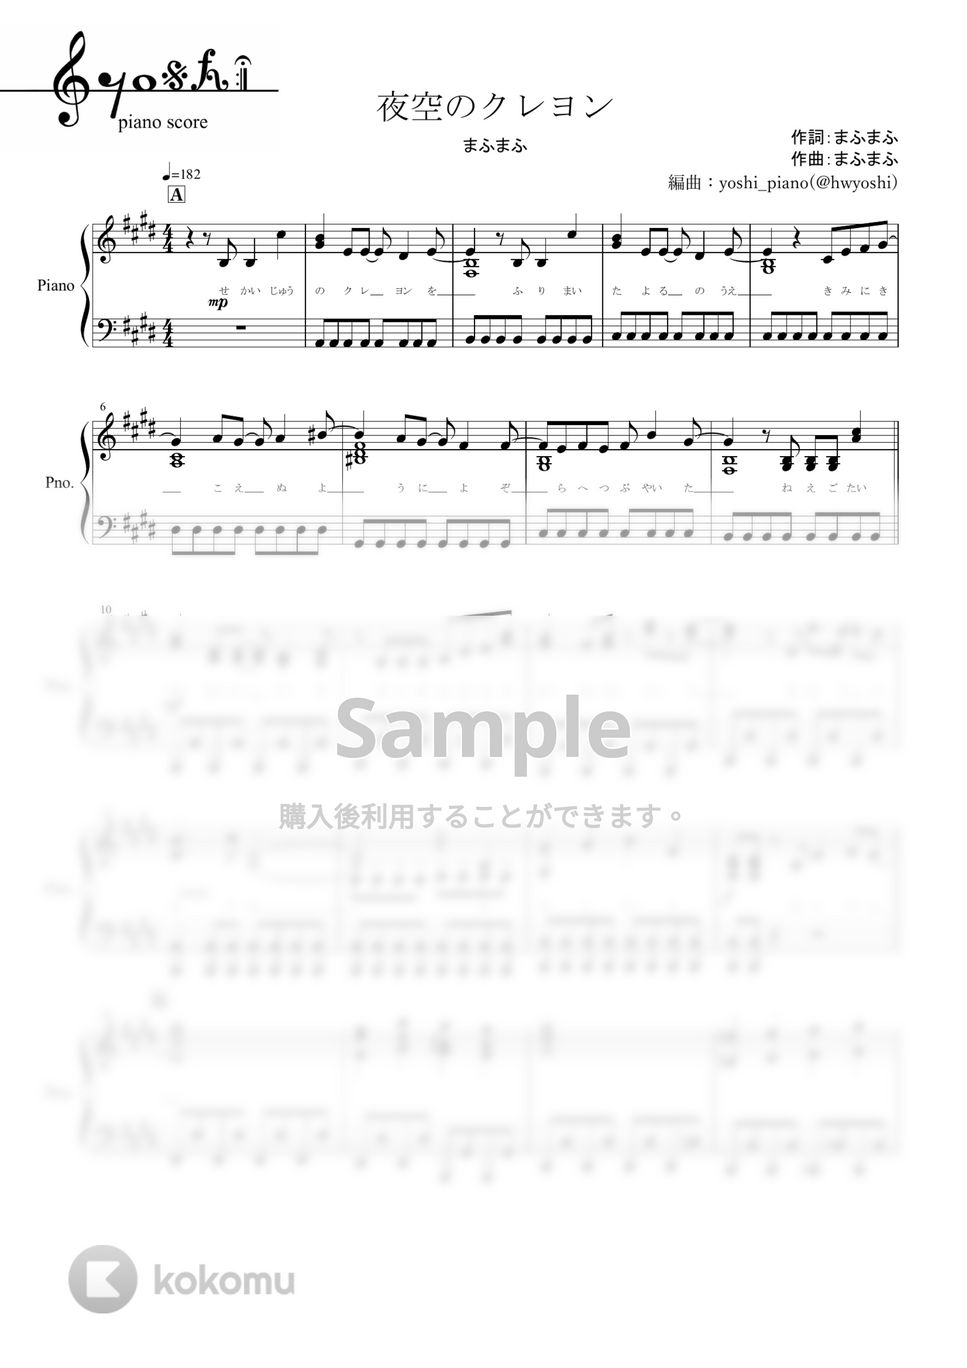 まふまふ - 夜空のクレヨン (ピアノ楽譜/全９ページ) by yoshi